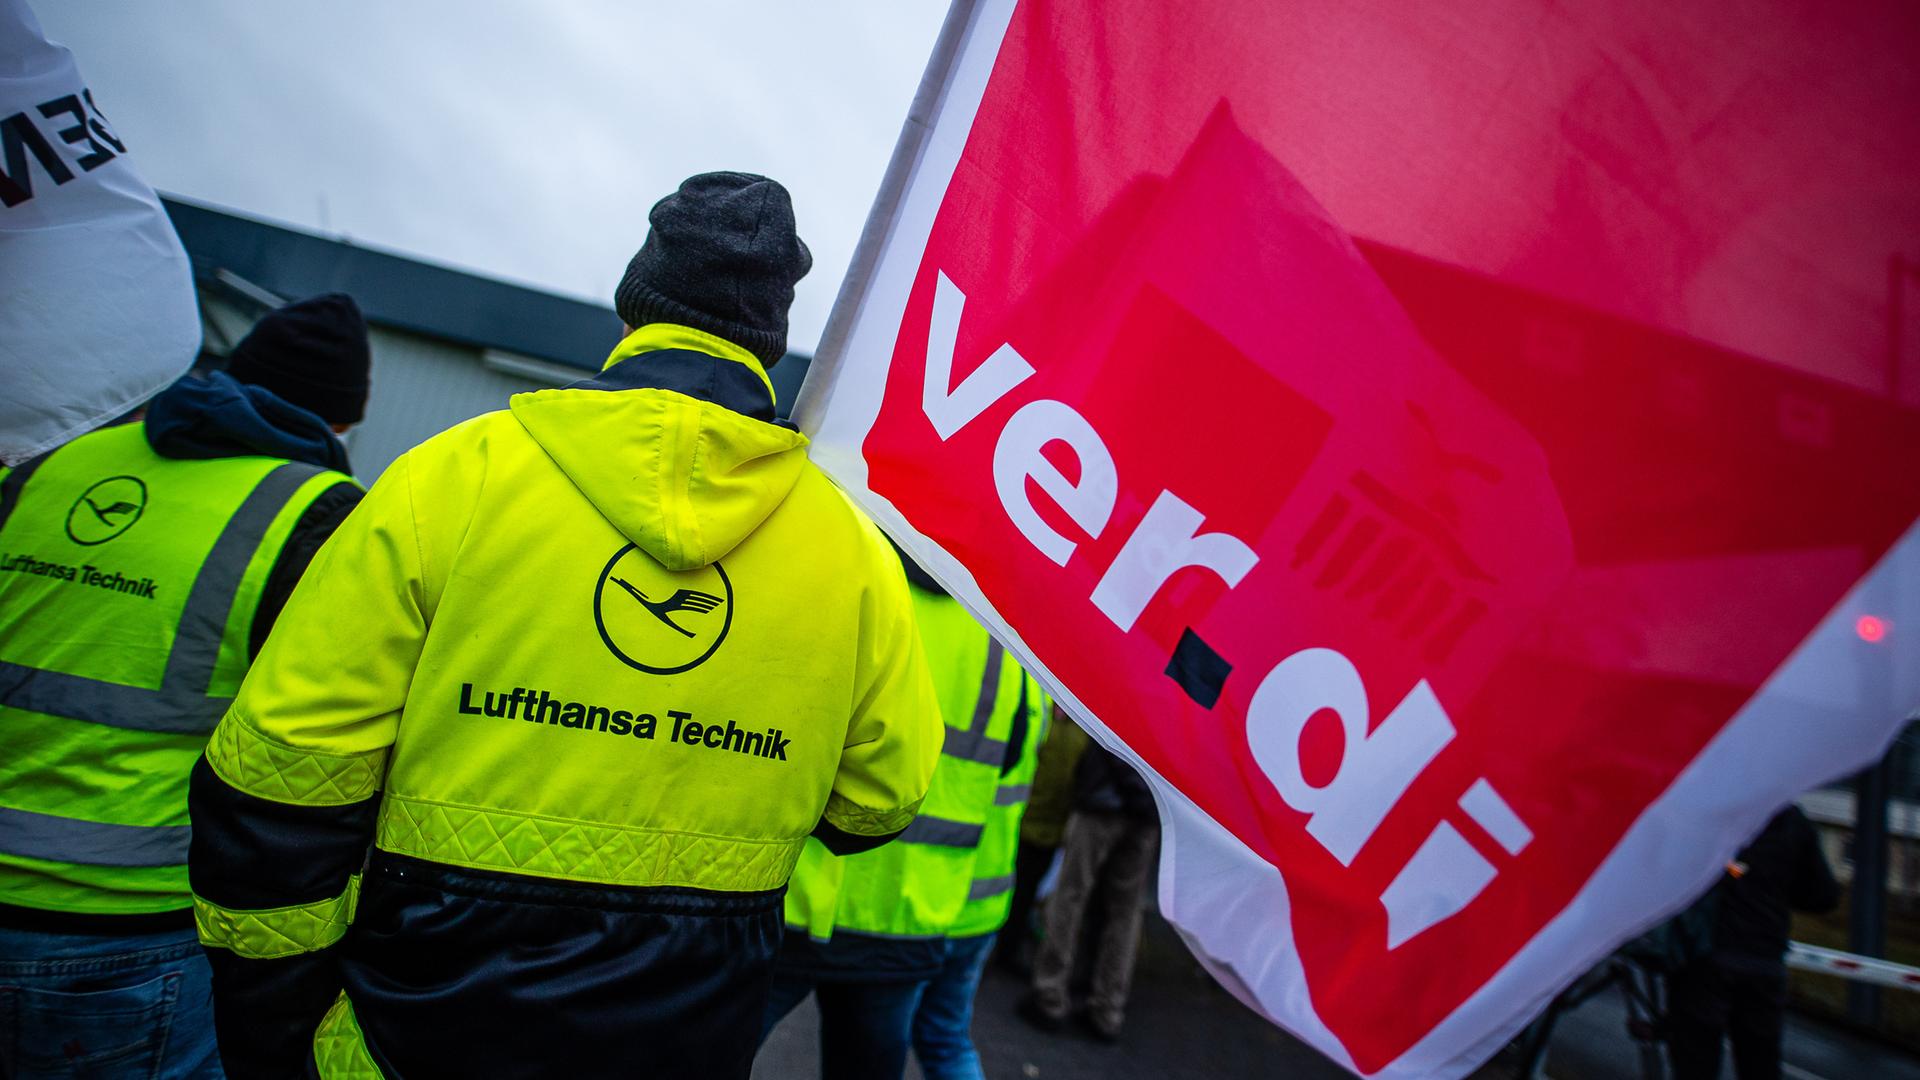 Tarifstreit - Verdi ruft Lufthansa-Bodenpersonal ab morgen zu dreitägigem Warnstreik auf - Passagiere wohl nicht betroffen